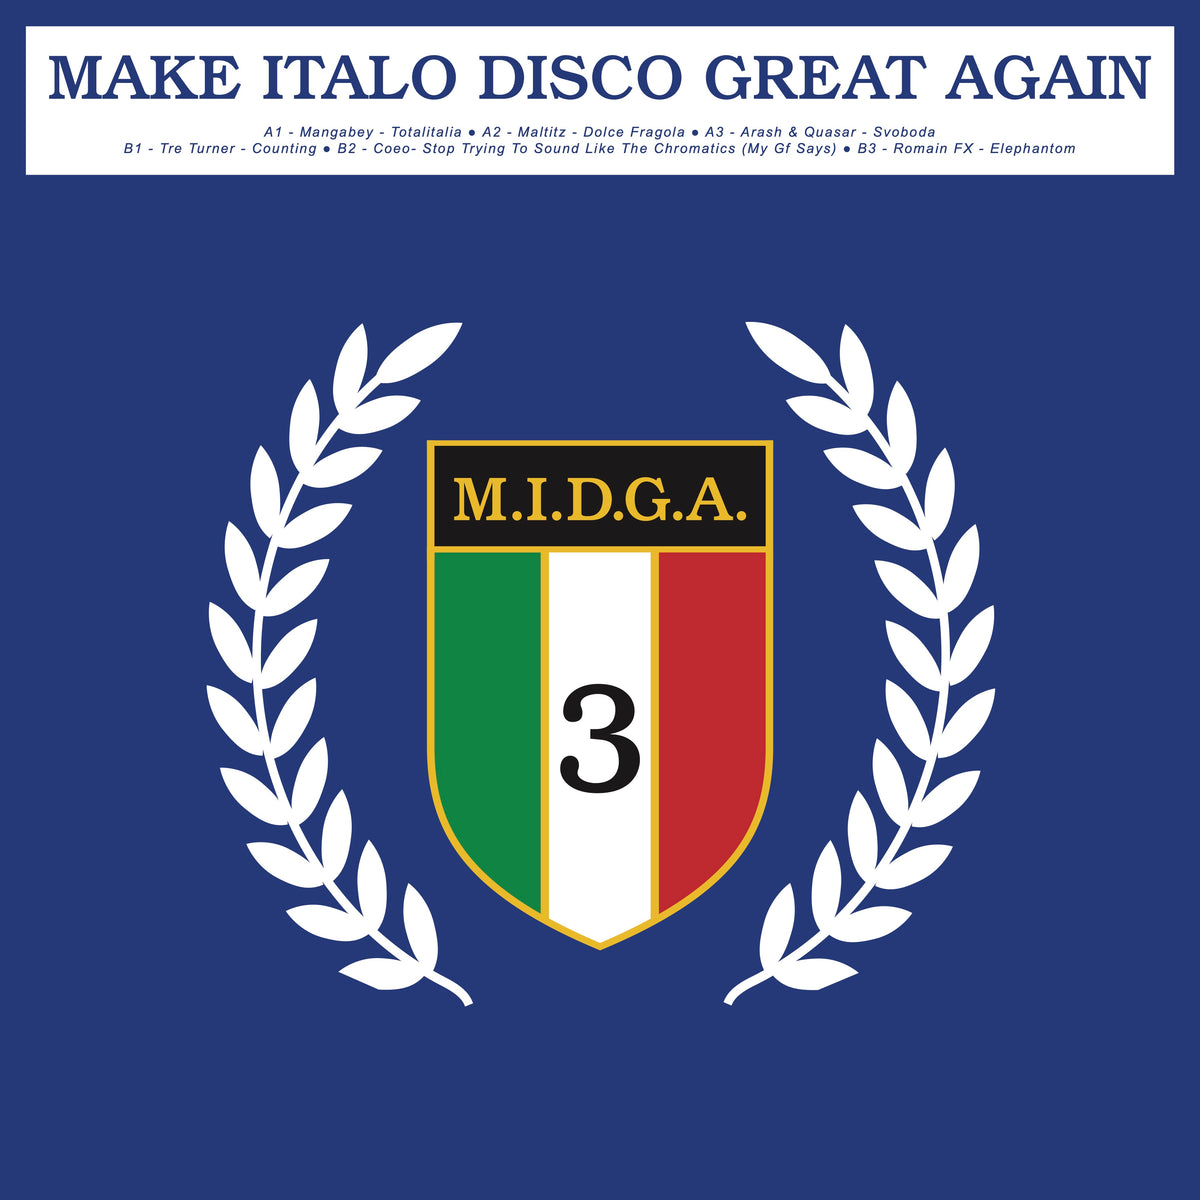 Make Italo Disco Great Again Vol.3 (COEO & Maltitz)